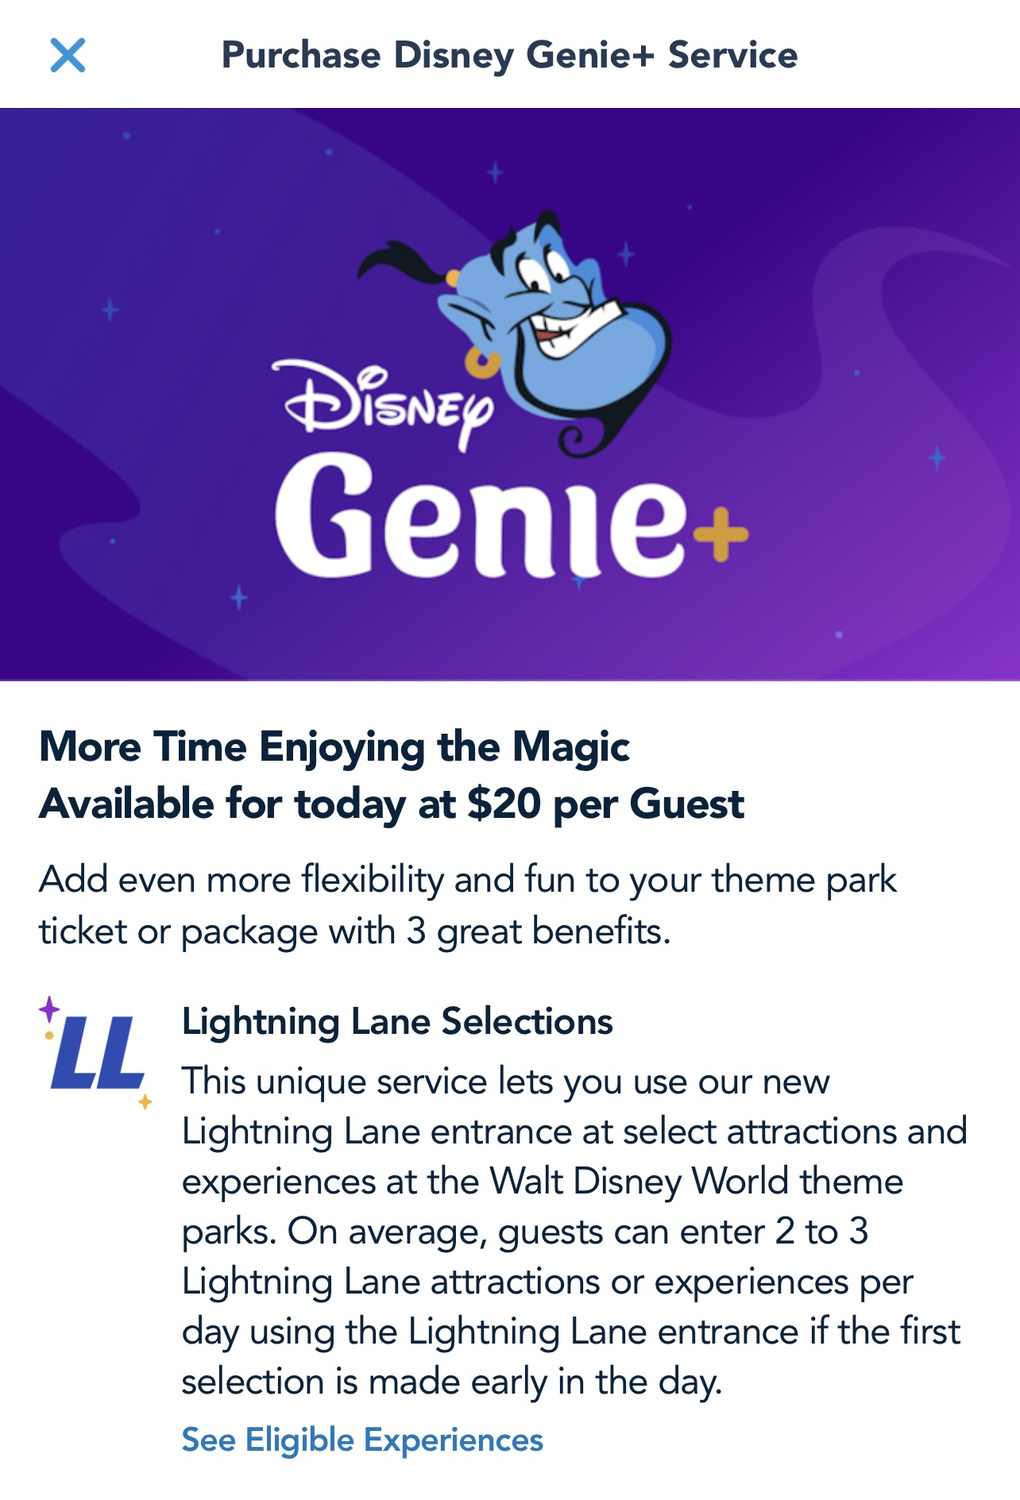 Genie+ Price Calendar: Find Out Much Genie+ Will Cost - WDW Magazine